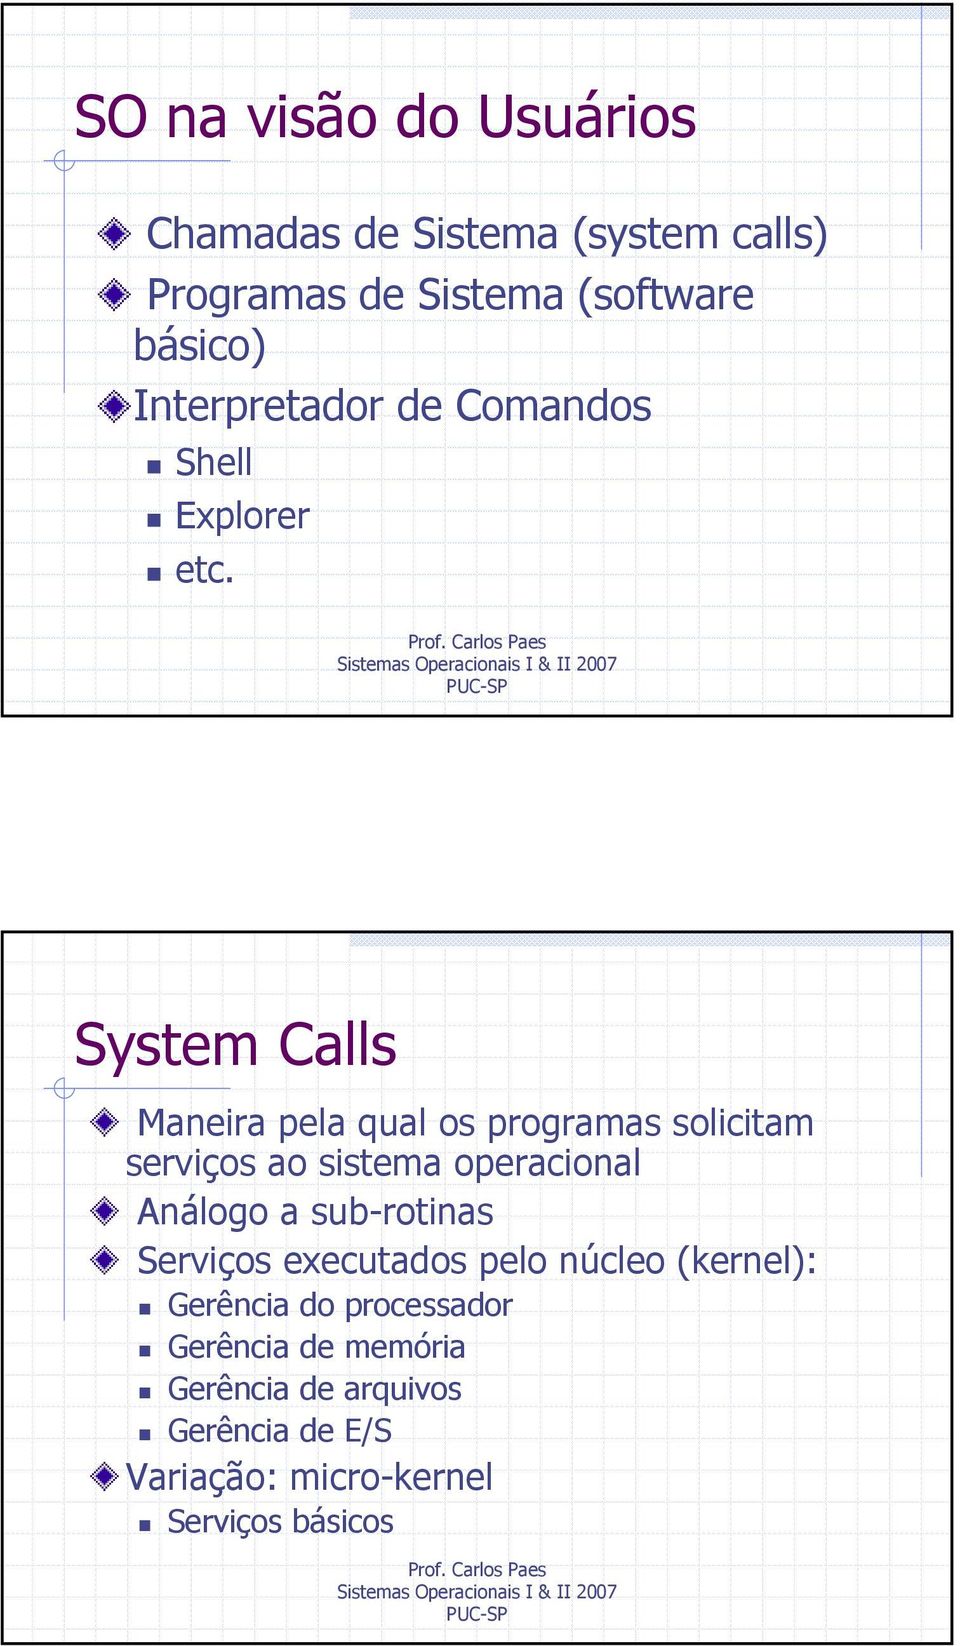 System Calls Maneira pela qual os programas solicitam serviços ao sistema operacional Análogo a